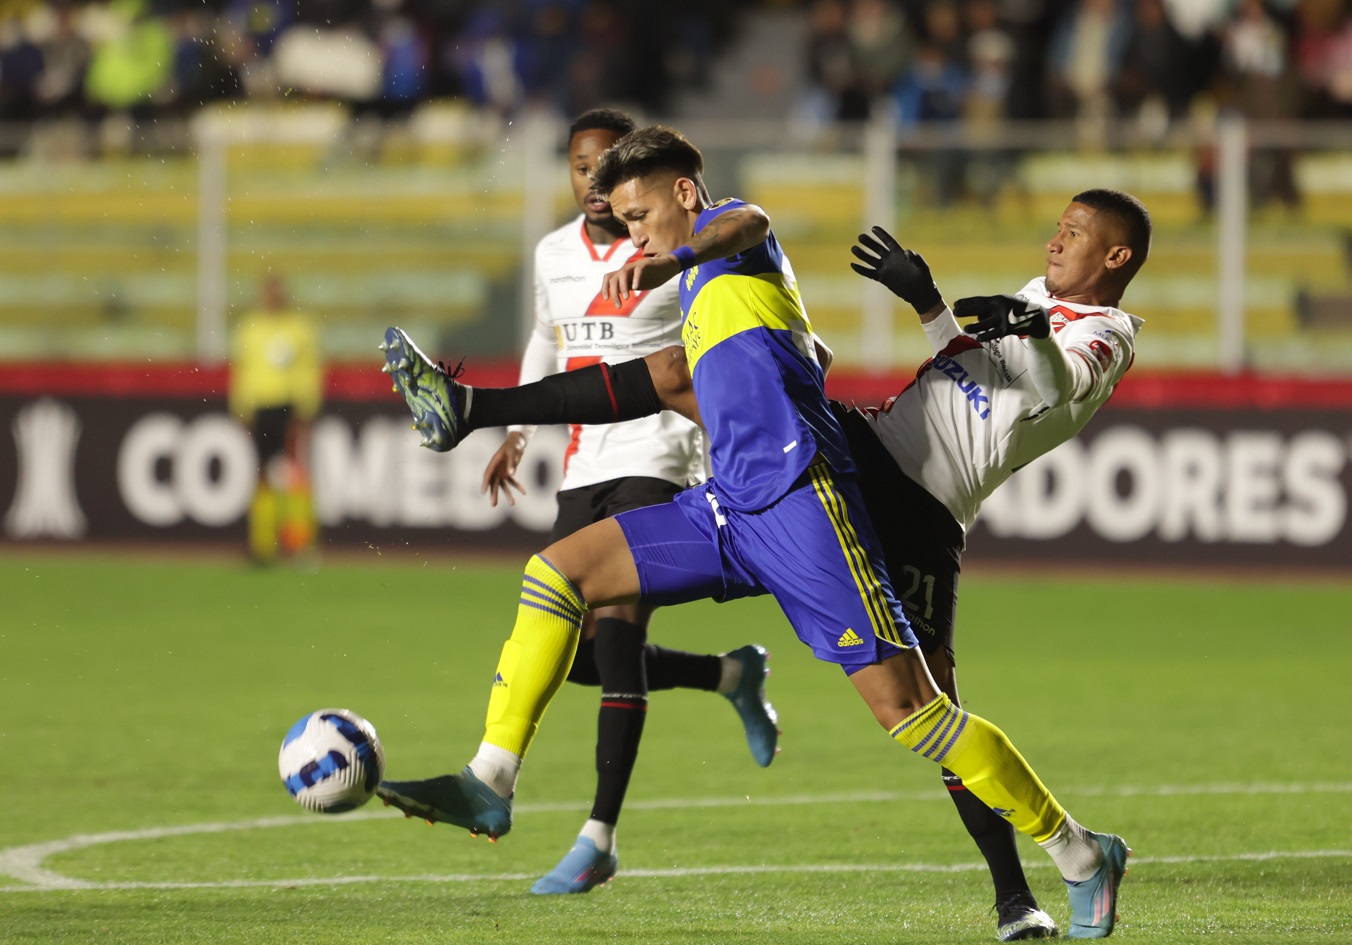 Copa Libertadores: Trabajoso triunfo de Boca en La Paz que lo deja en zona de clasificación